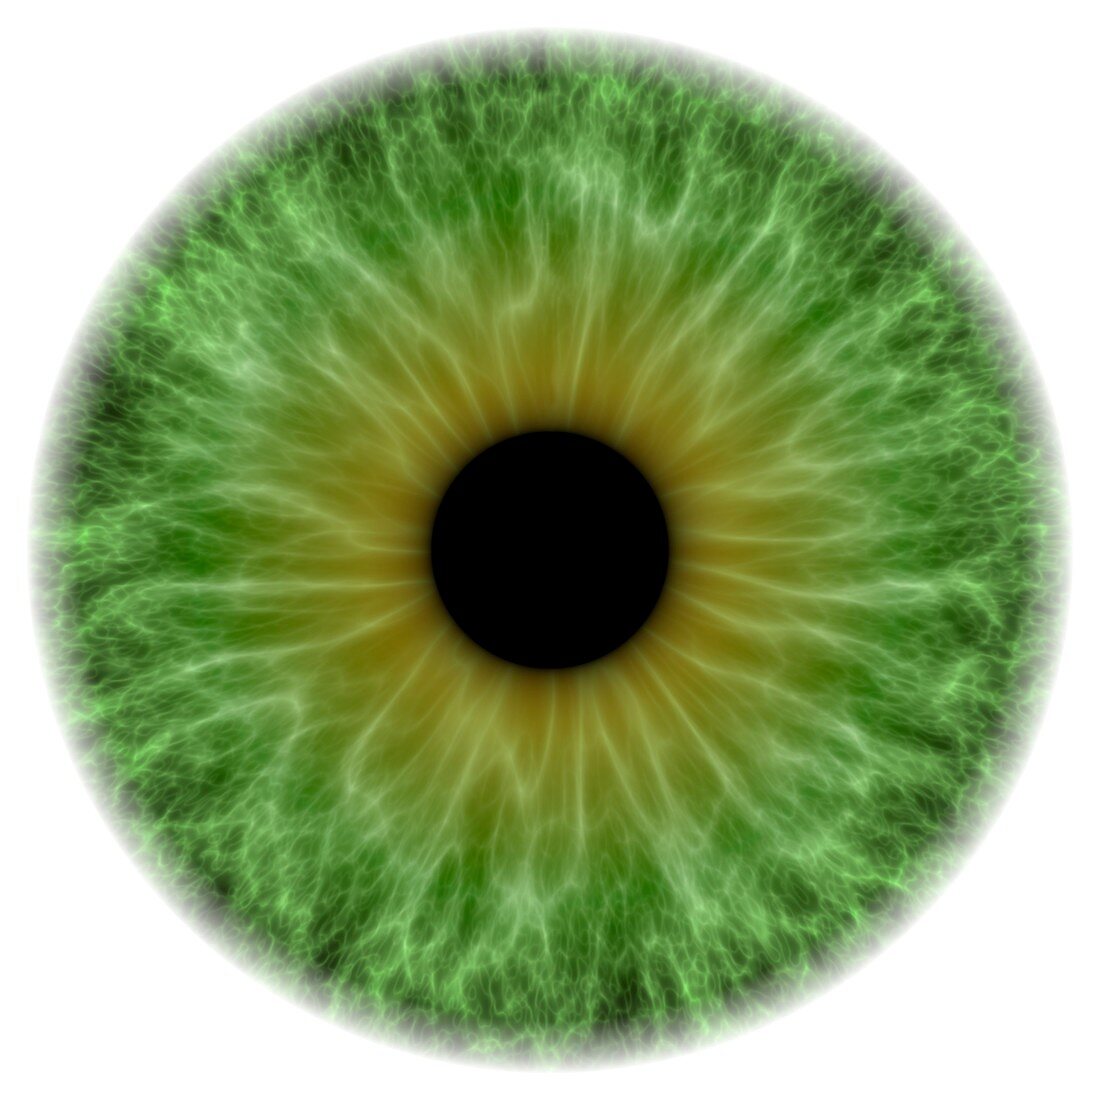 Green eye,artwork